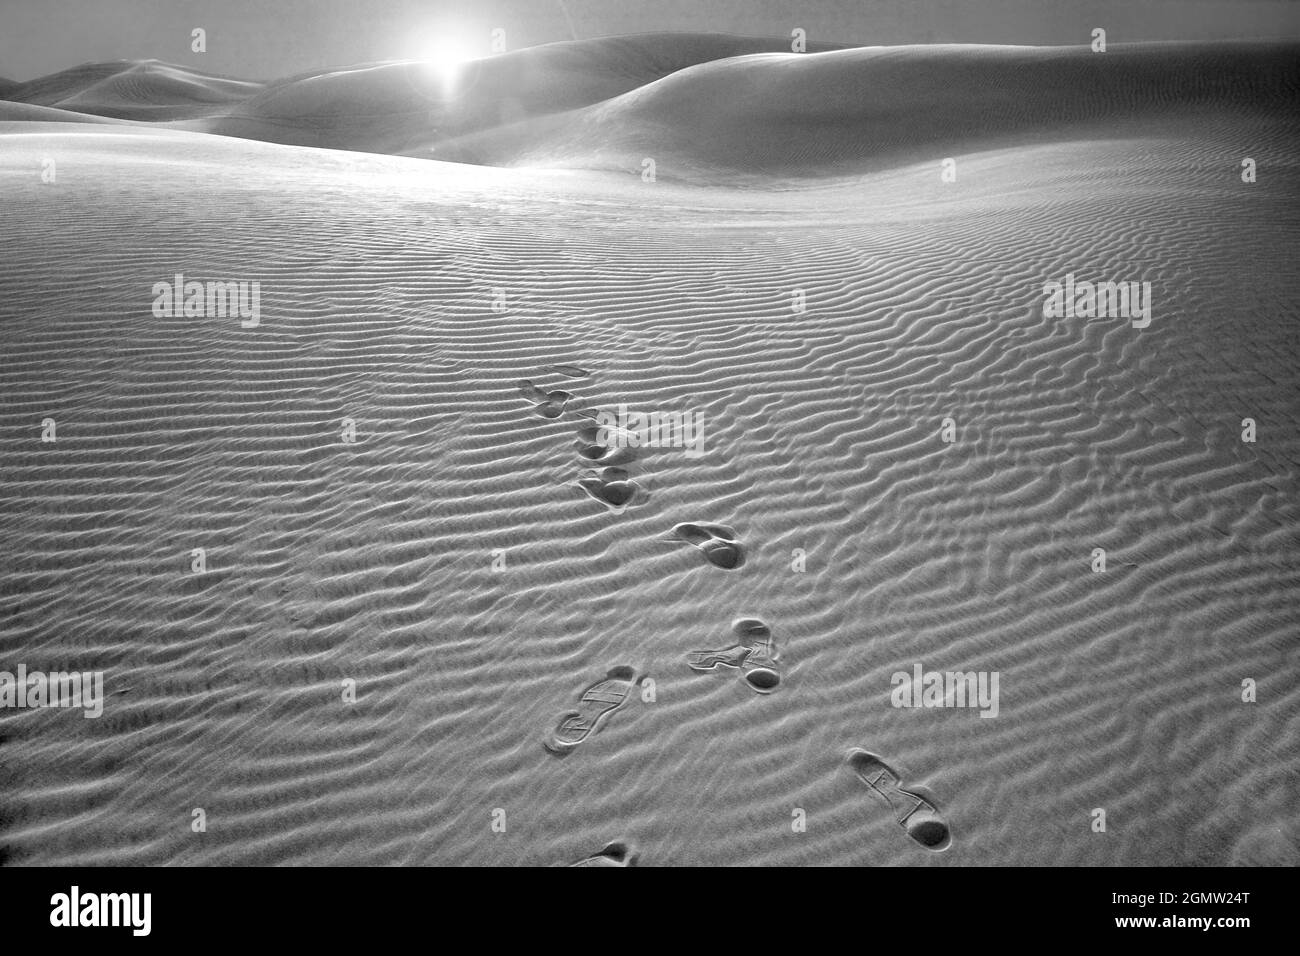 Dubai, Vereinigte Arabische Emirate - 6. Februar 2008 der lebhafte Sand der Wüsten außerhalb von Dubai, Vereinigte Arabische Emirate, bietet eine wilde Schönheit. Leider U Stockfoto